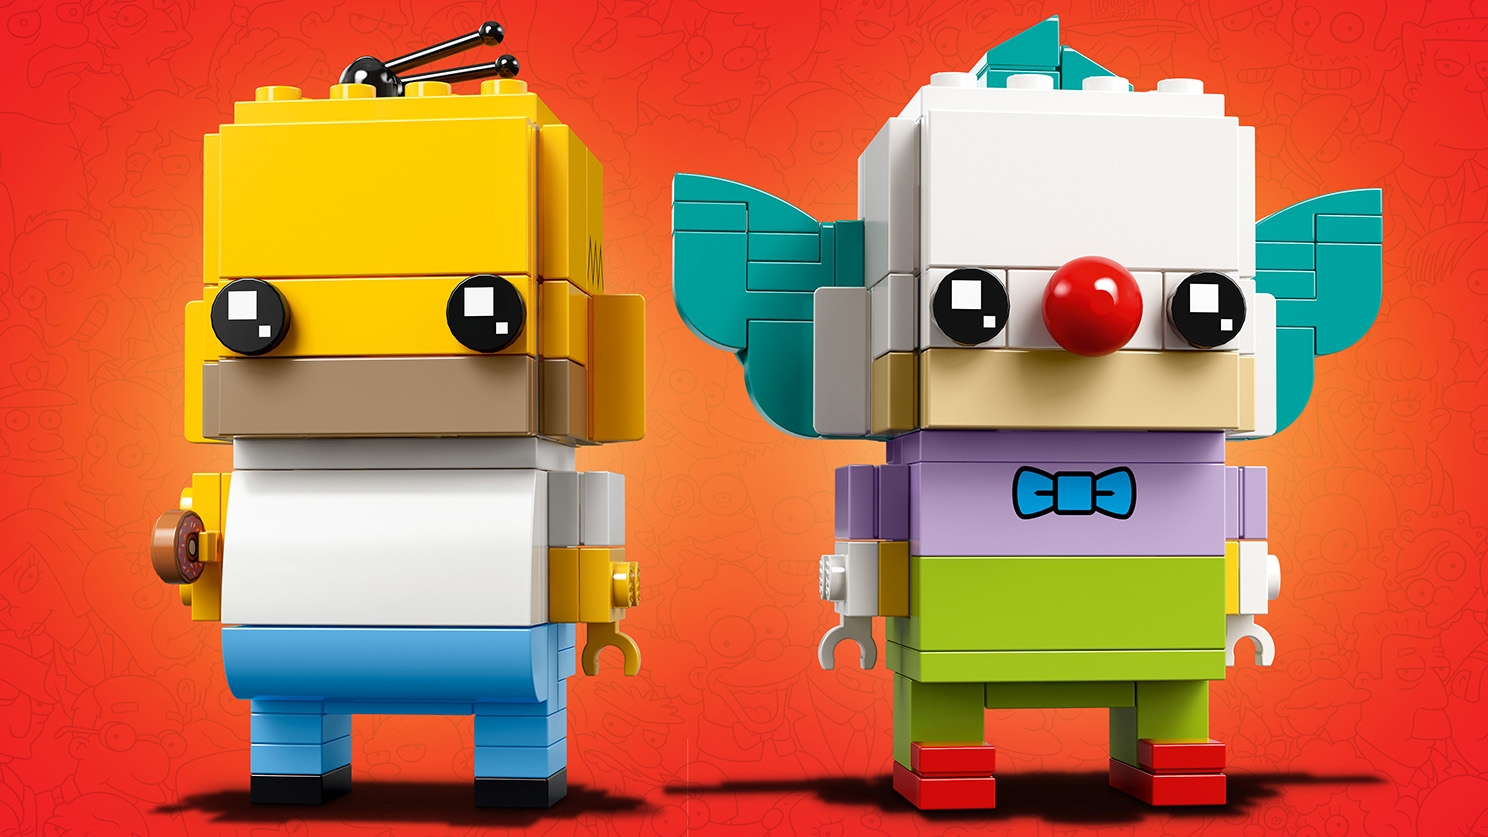 LEGO Brickheadz 40348 - Clown Di Compleanno